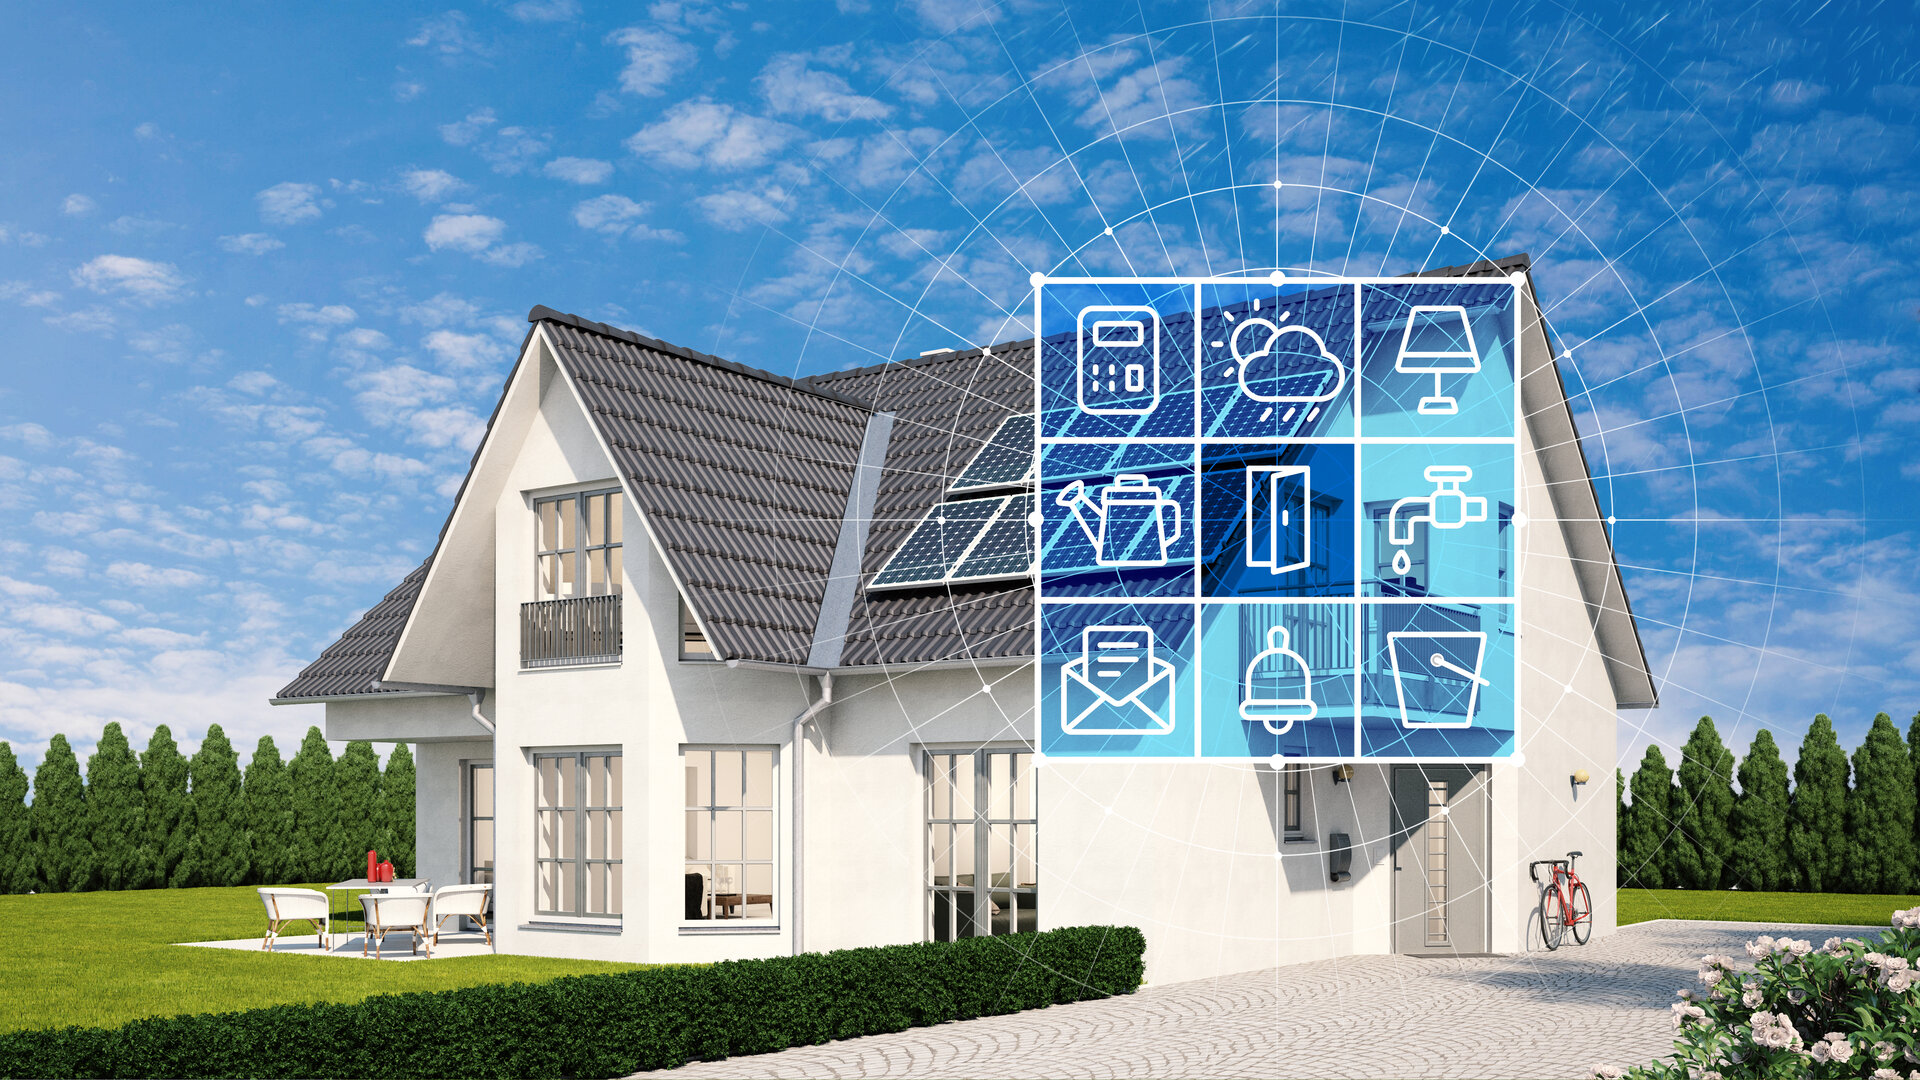 Haus und Garten mit Smart Home Technologie